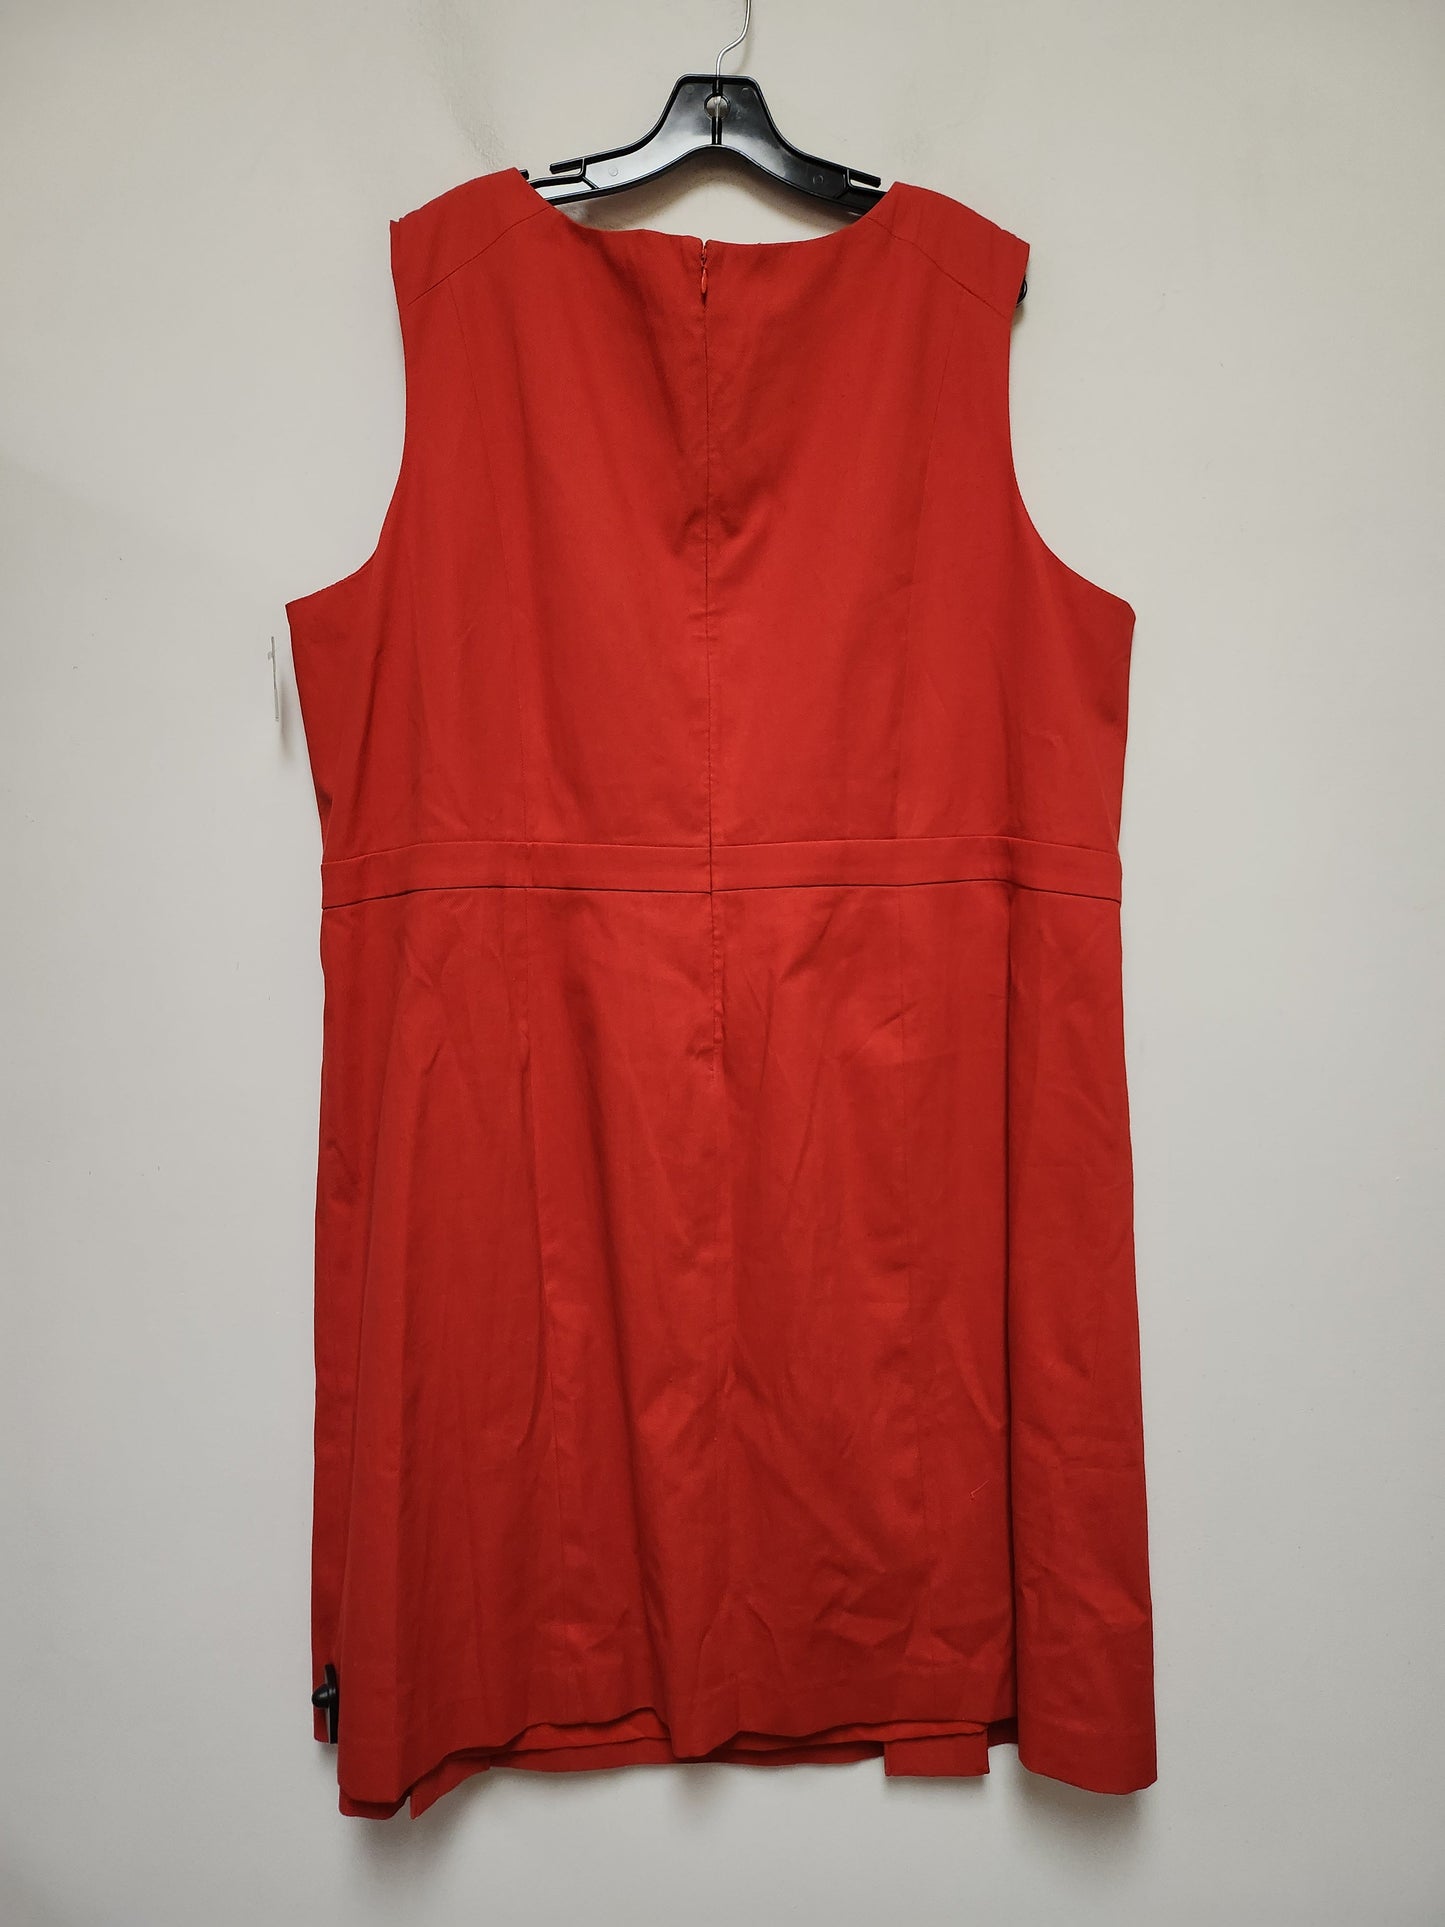 Red Dress Casual Midi Talbots, Size 3x